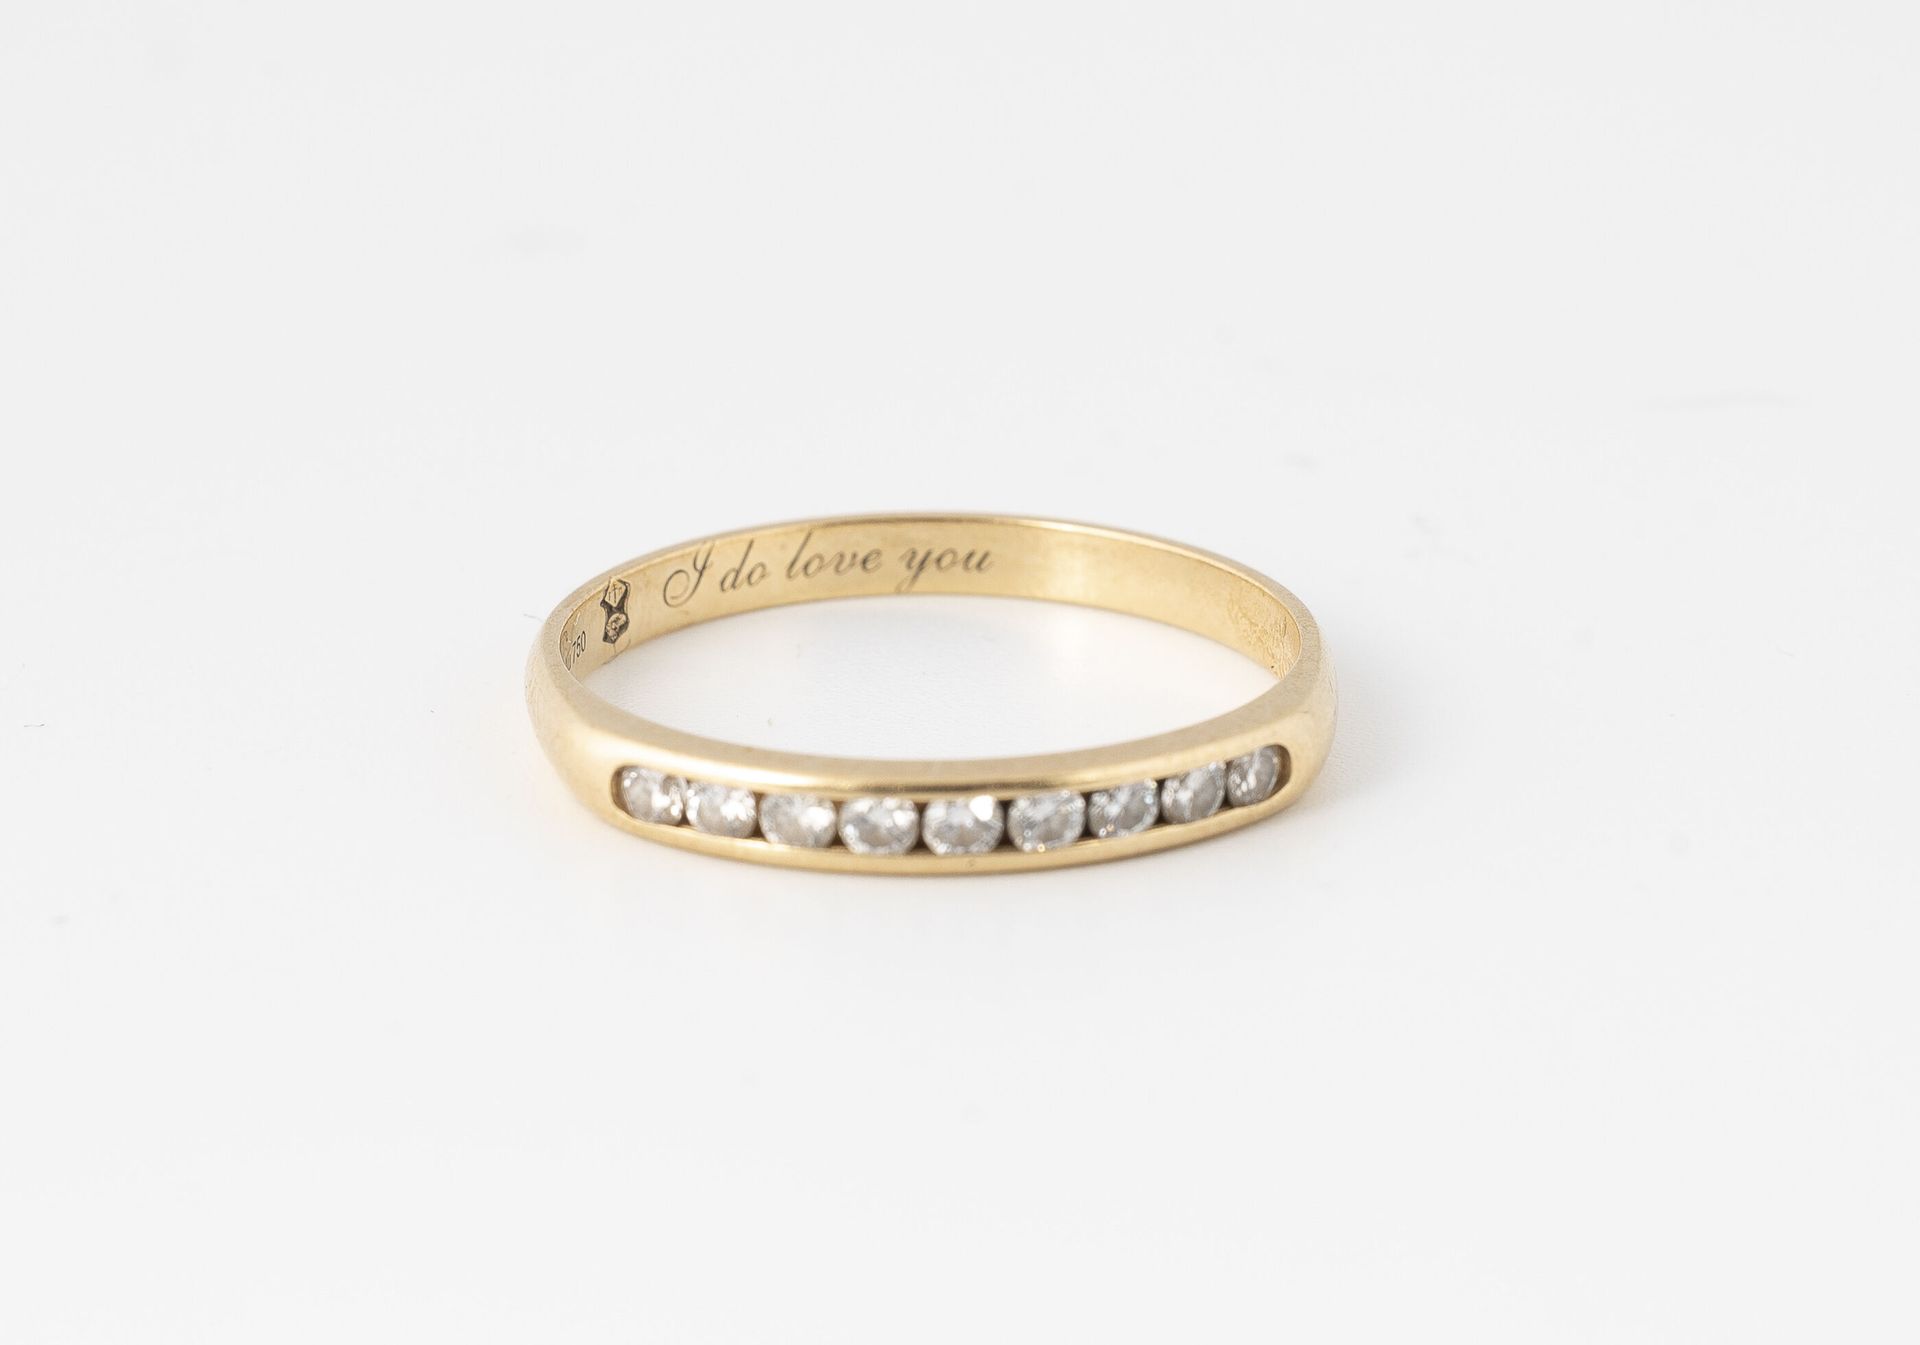 GUERIN 精美的黄金（750）结婚戒指，中心是一排明亮式切割的钻石，采用轨道式镶嵌。

签名。

毛重：1.7克 - 手指大小：53.5。

刮伤和擦伤。